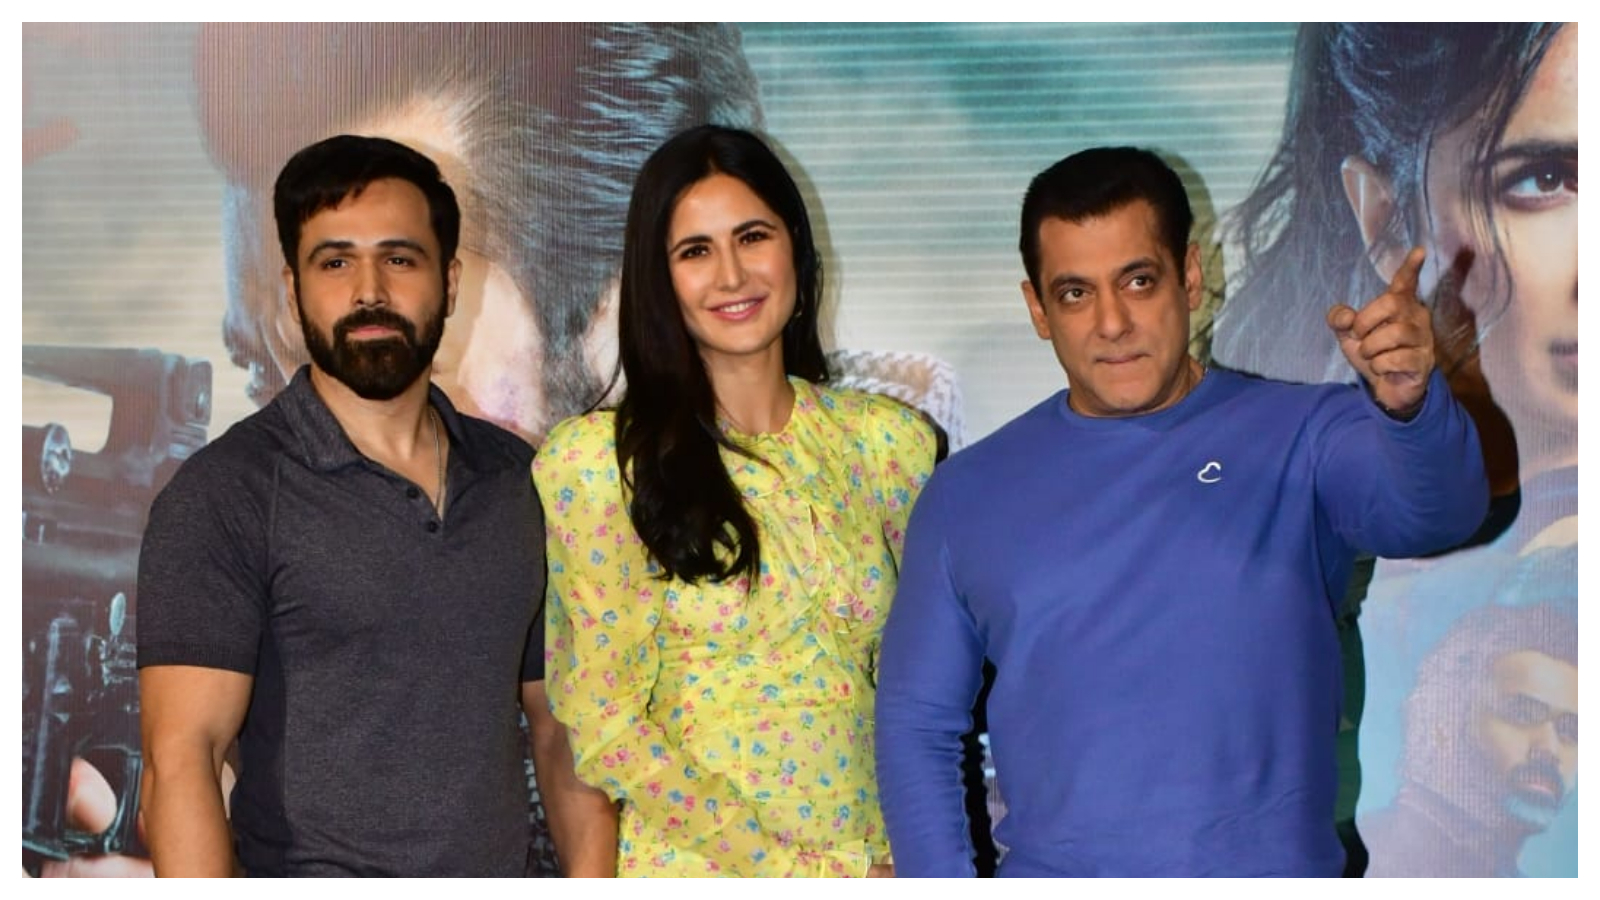 Salman Khan Ka Xx Video - Salman Khan pretends to kiss Emraan Hashmi at Tiger 3 success event, says  he has always been well-behaved: 'Meri aadat toh kabhi rahi nahi' |  Bollywood News - The Indian Express